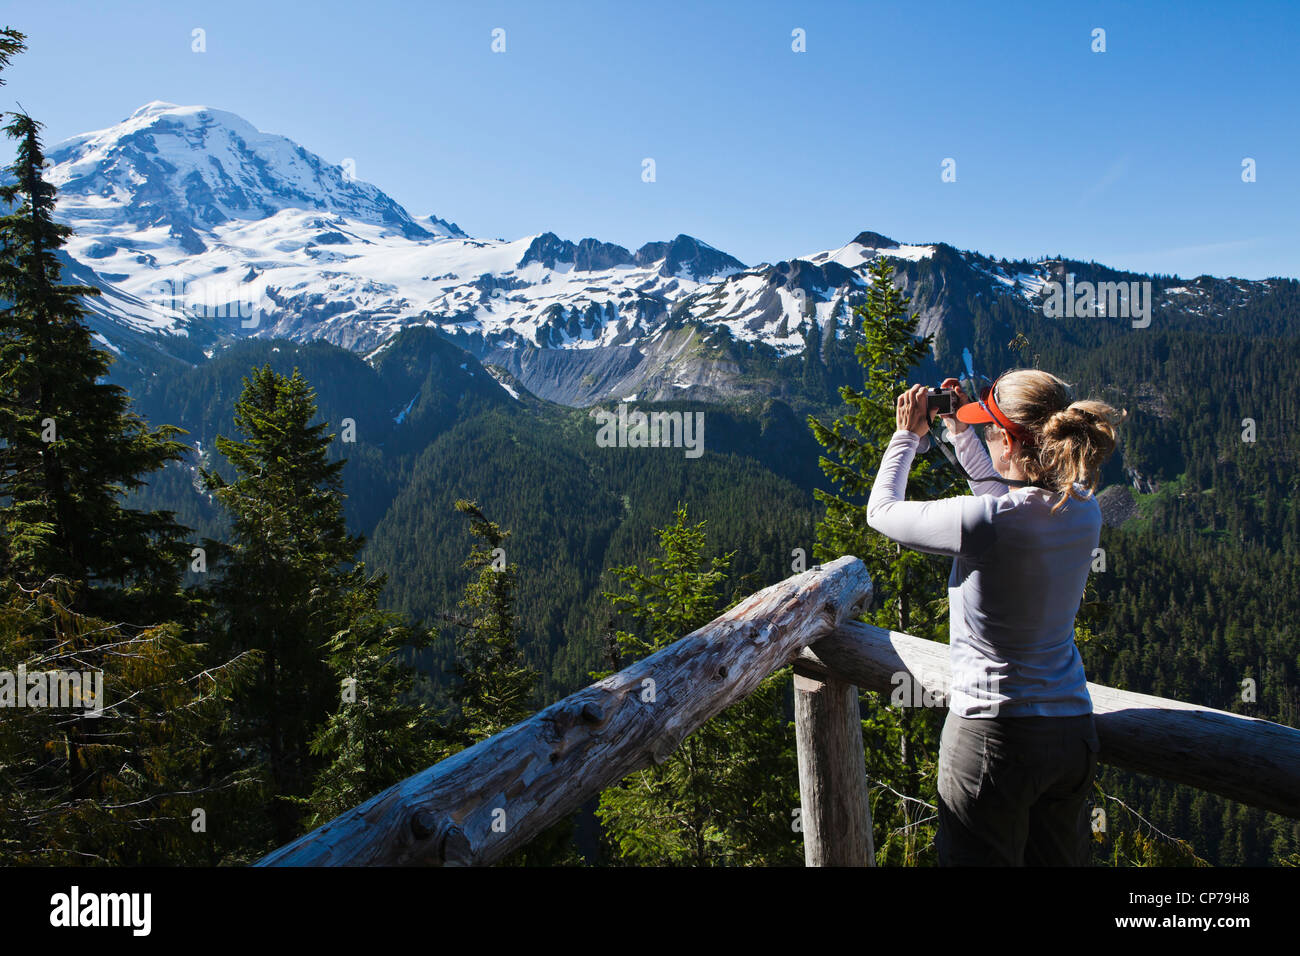 Une femme prise d'une photo sur le côté nord-ouest du Mont Rainier, Mount Rainier National Park, Washington, USA. Banque D'Images